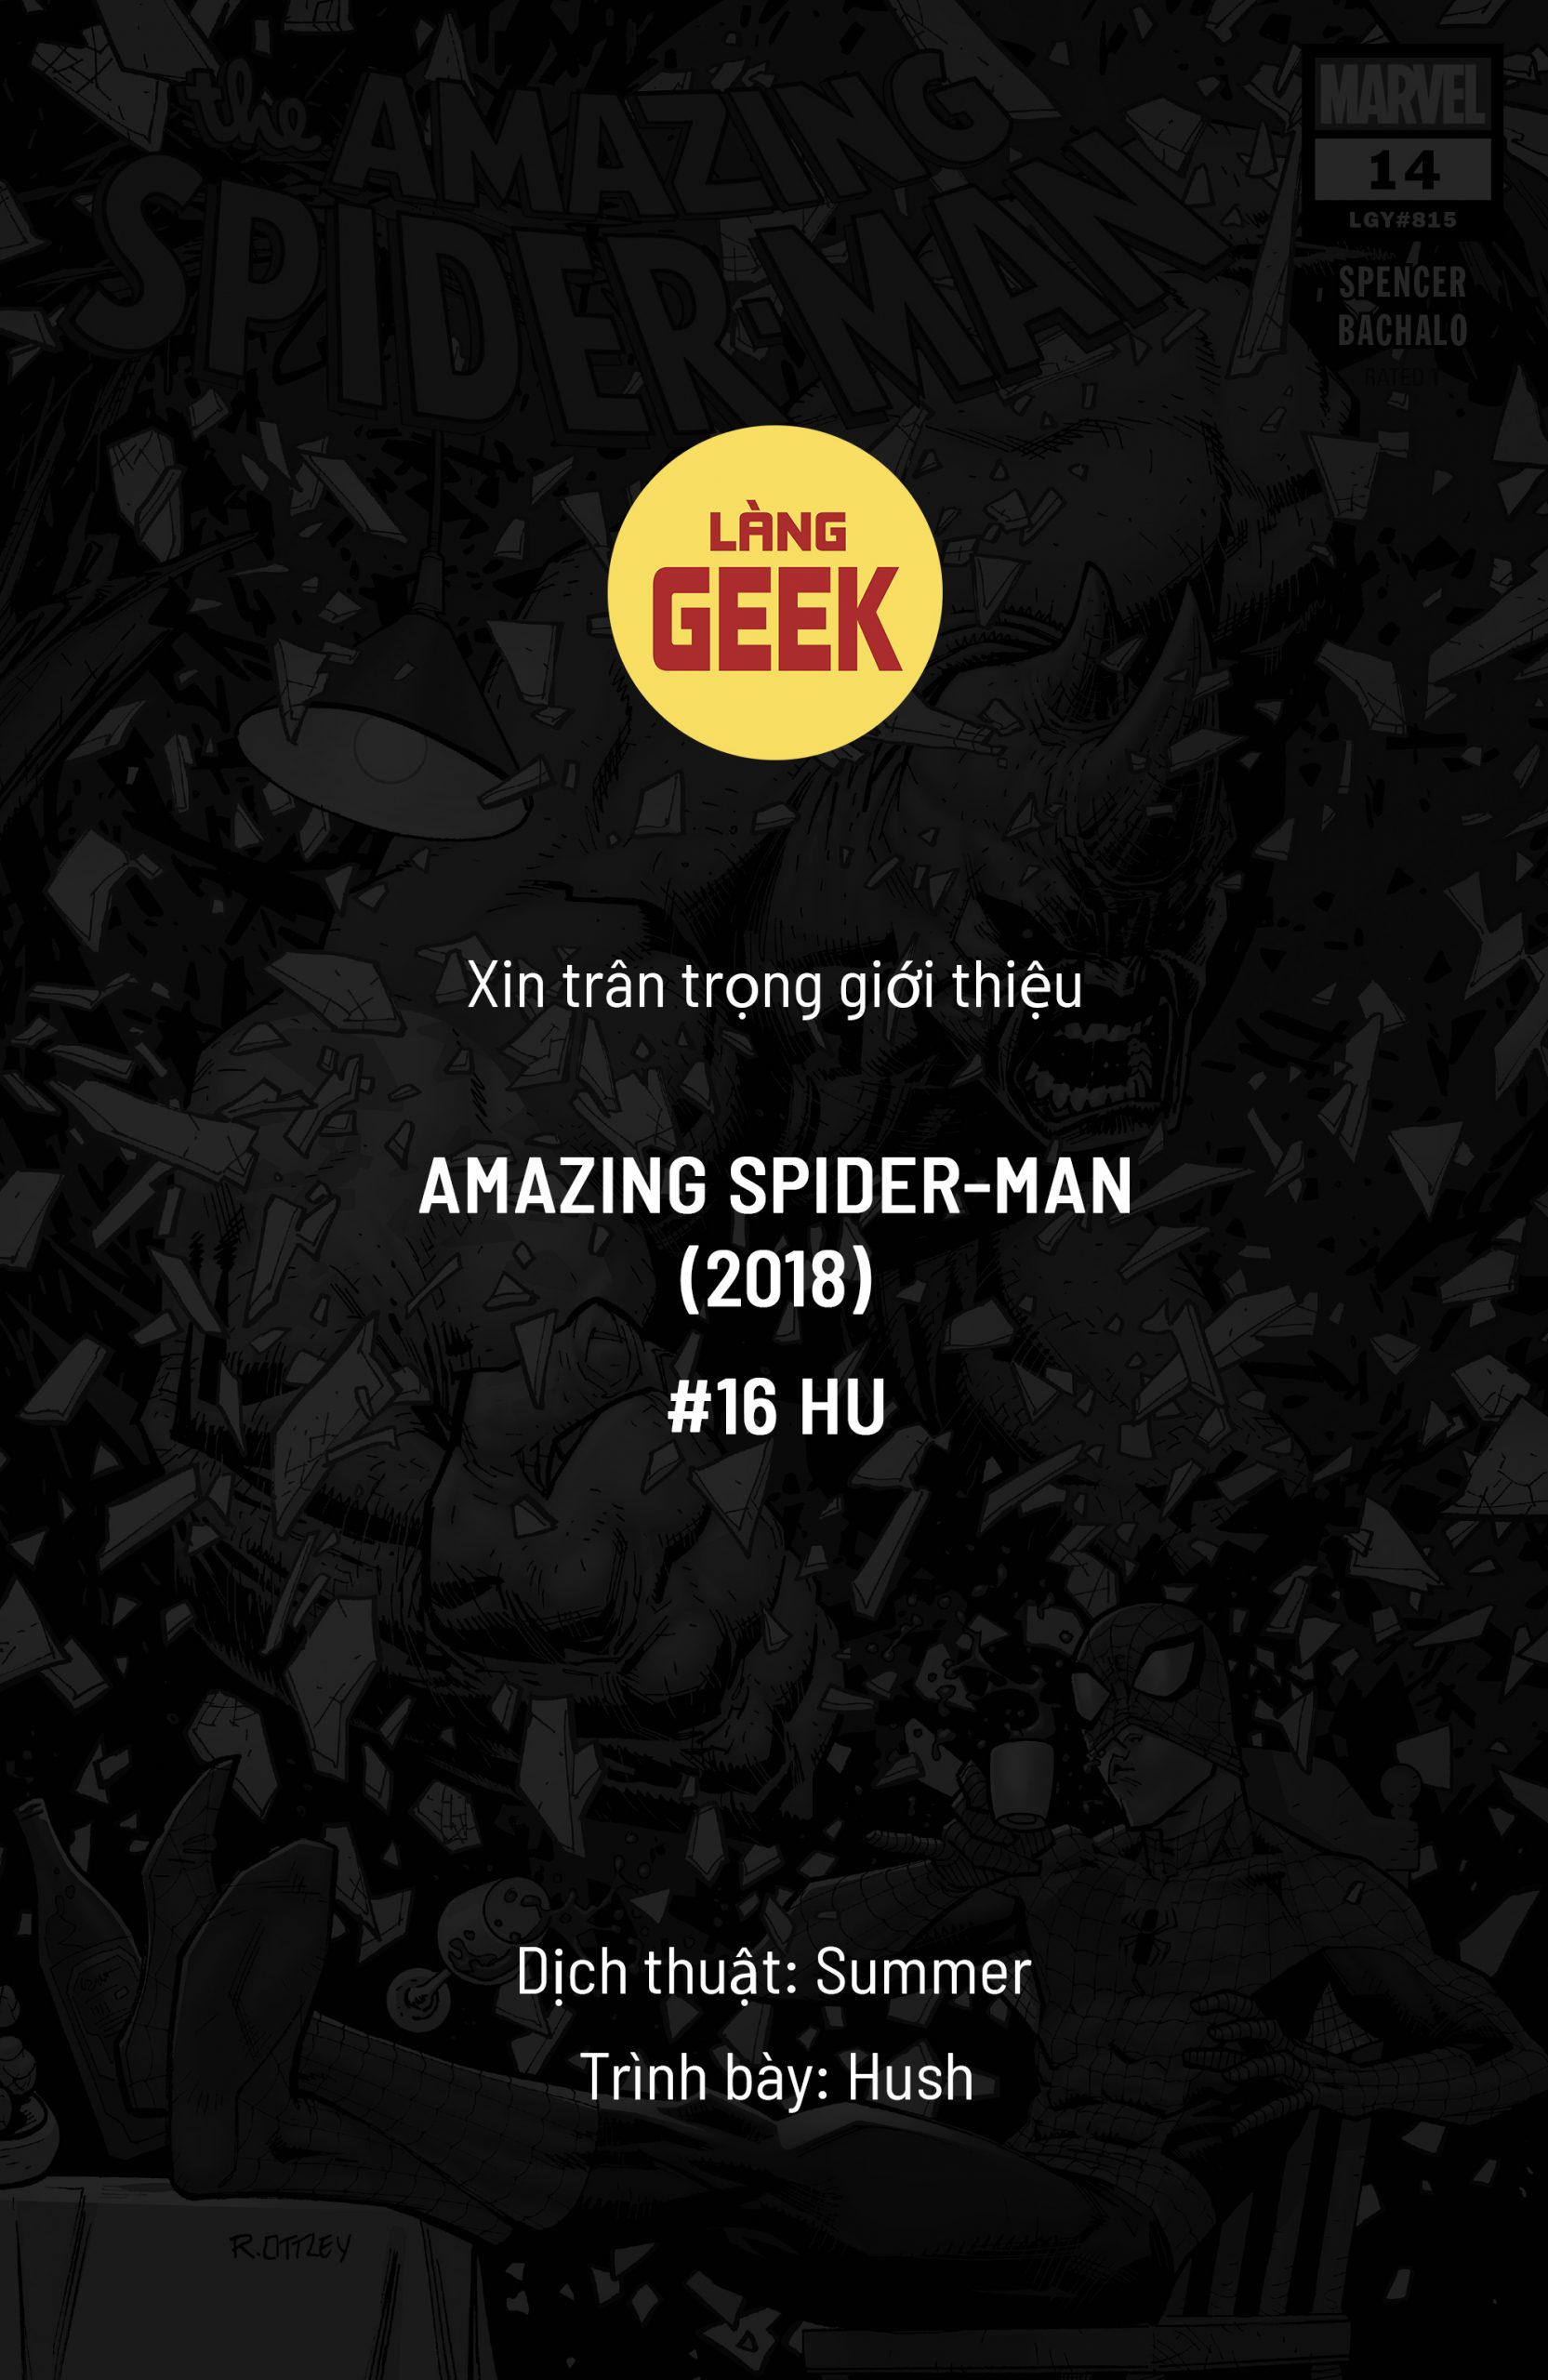 https://langgeek.net/wp-content/webpc-passthru.php?src=https://langgeek.net/wp-content/uploads/2022/01/Amazing-Spider-Man-016.HU-00-scaled.jpg&nocache=1